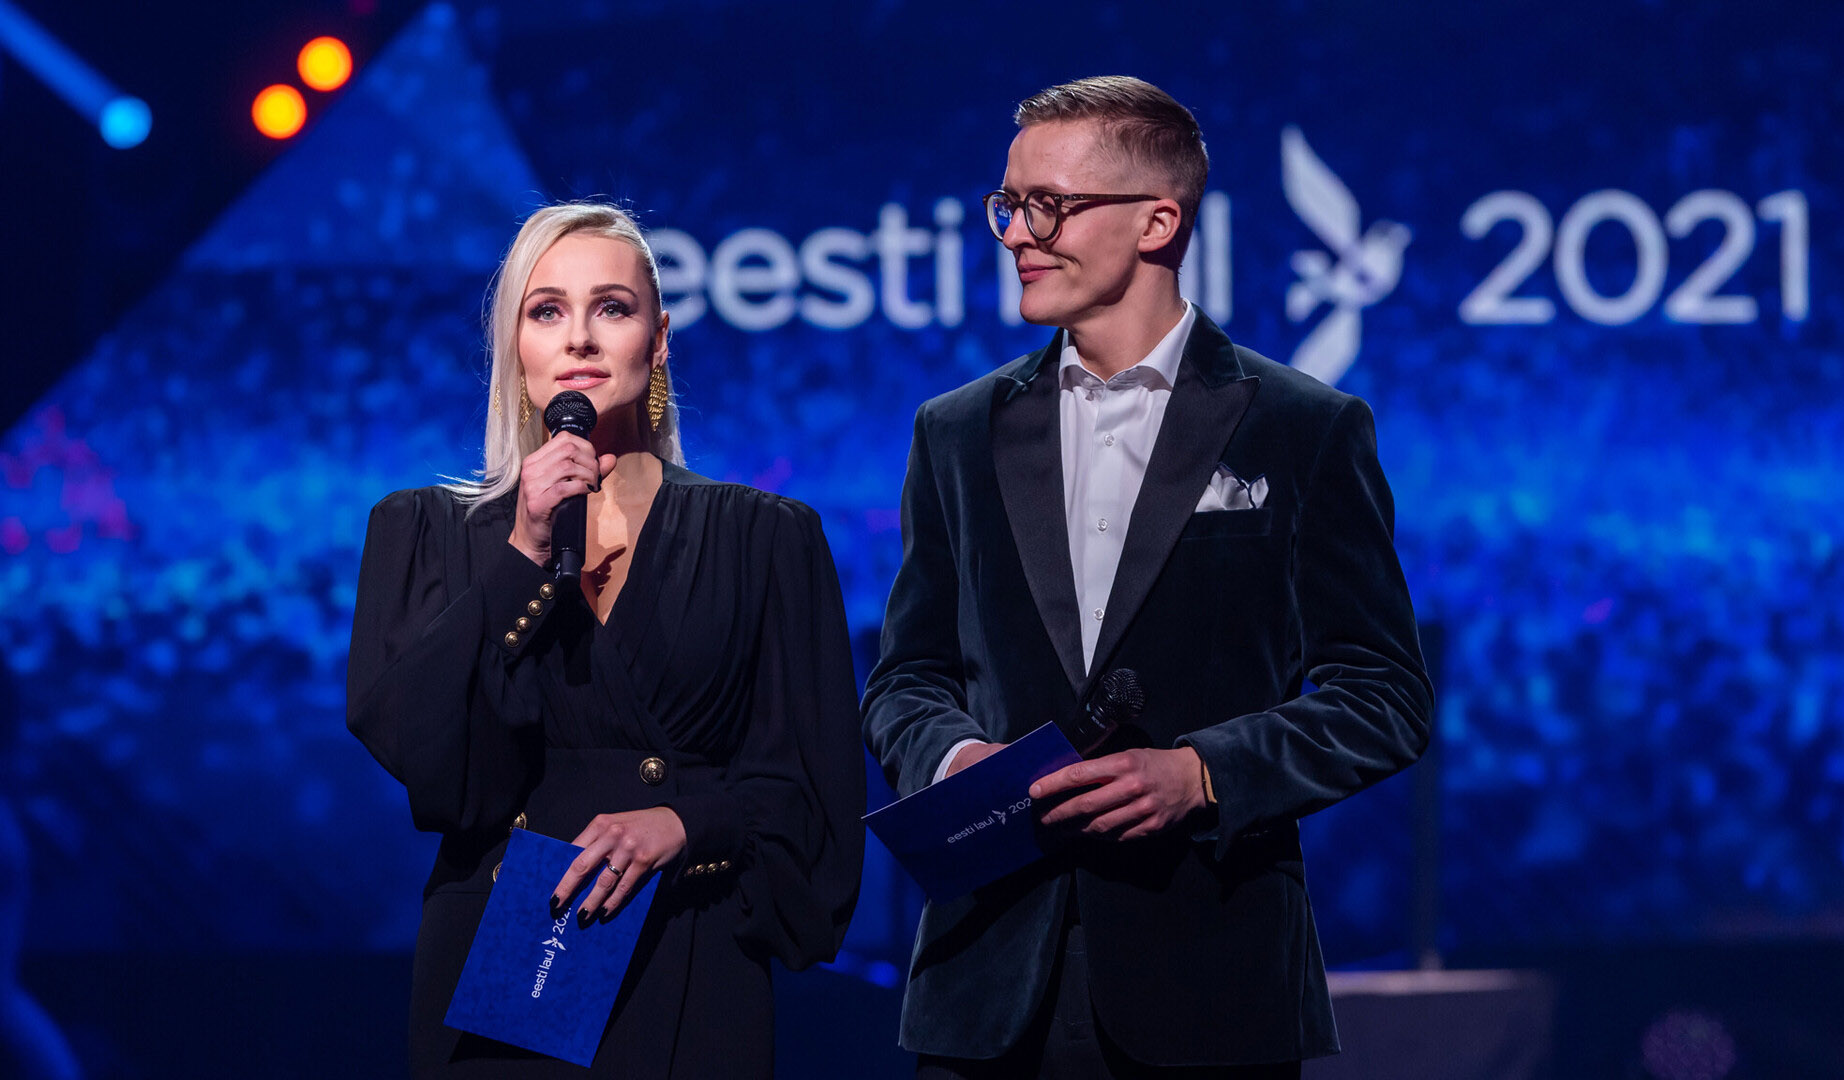 Estonia: seleccionados los seis últimos finalistas del Eesti Laul 2021